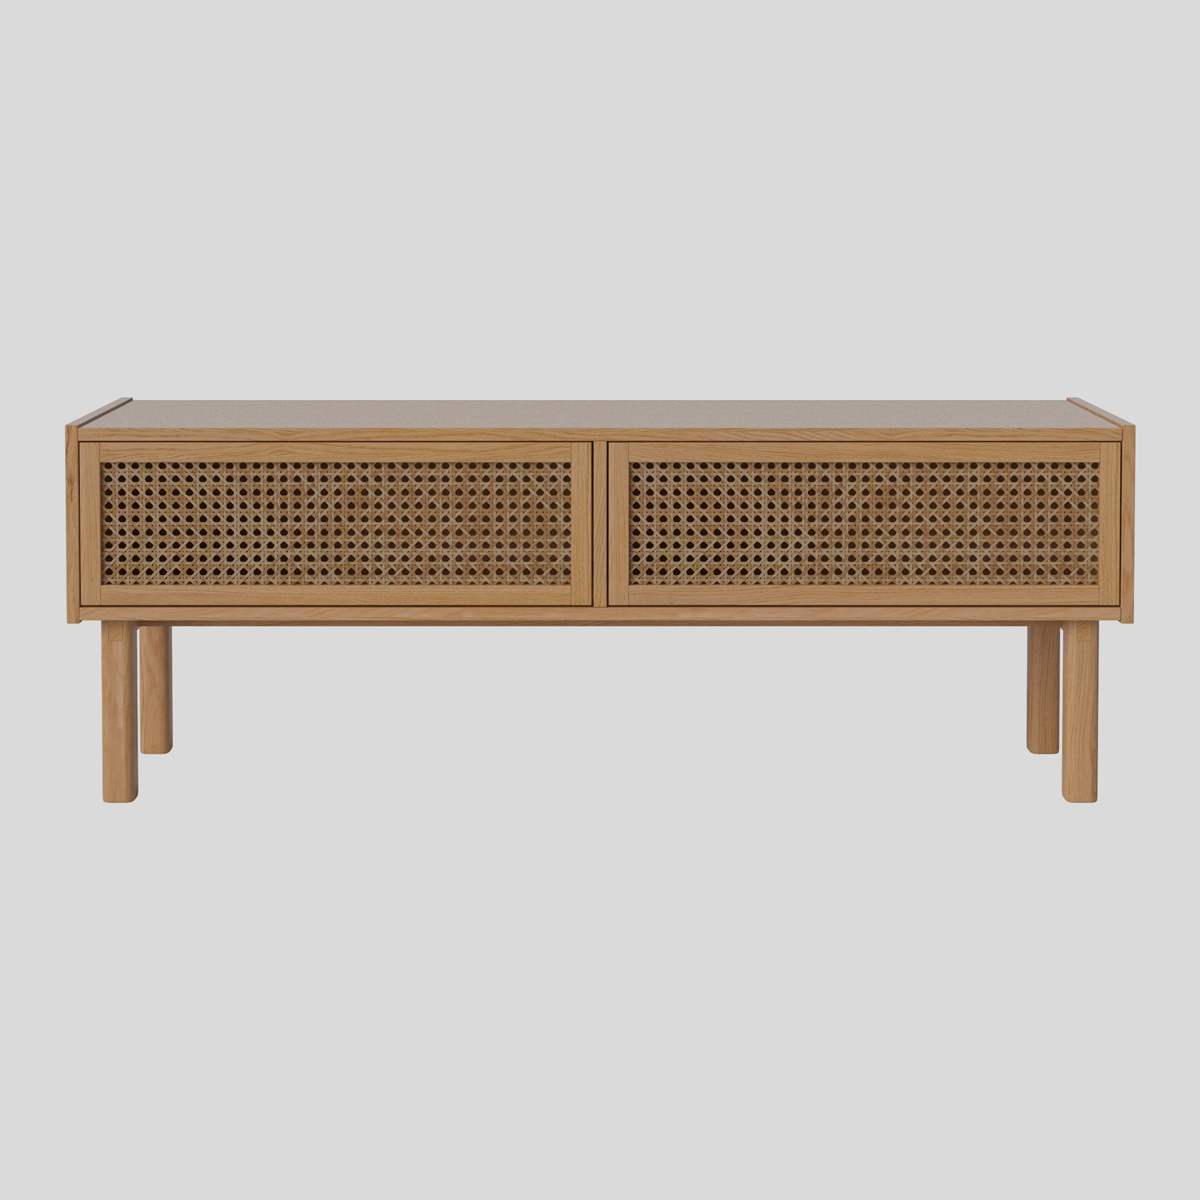 Een kast met rotan zoals de Bolia Cana tv-meubel past dankzij de licht houtkleur erg mooi in een Scandinavisch interieur.